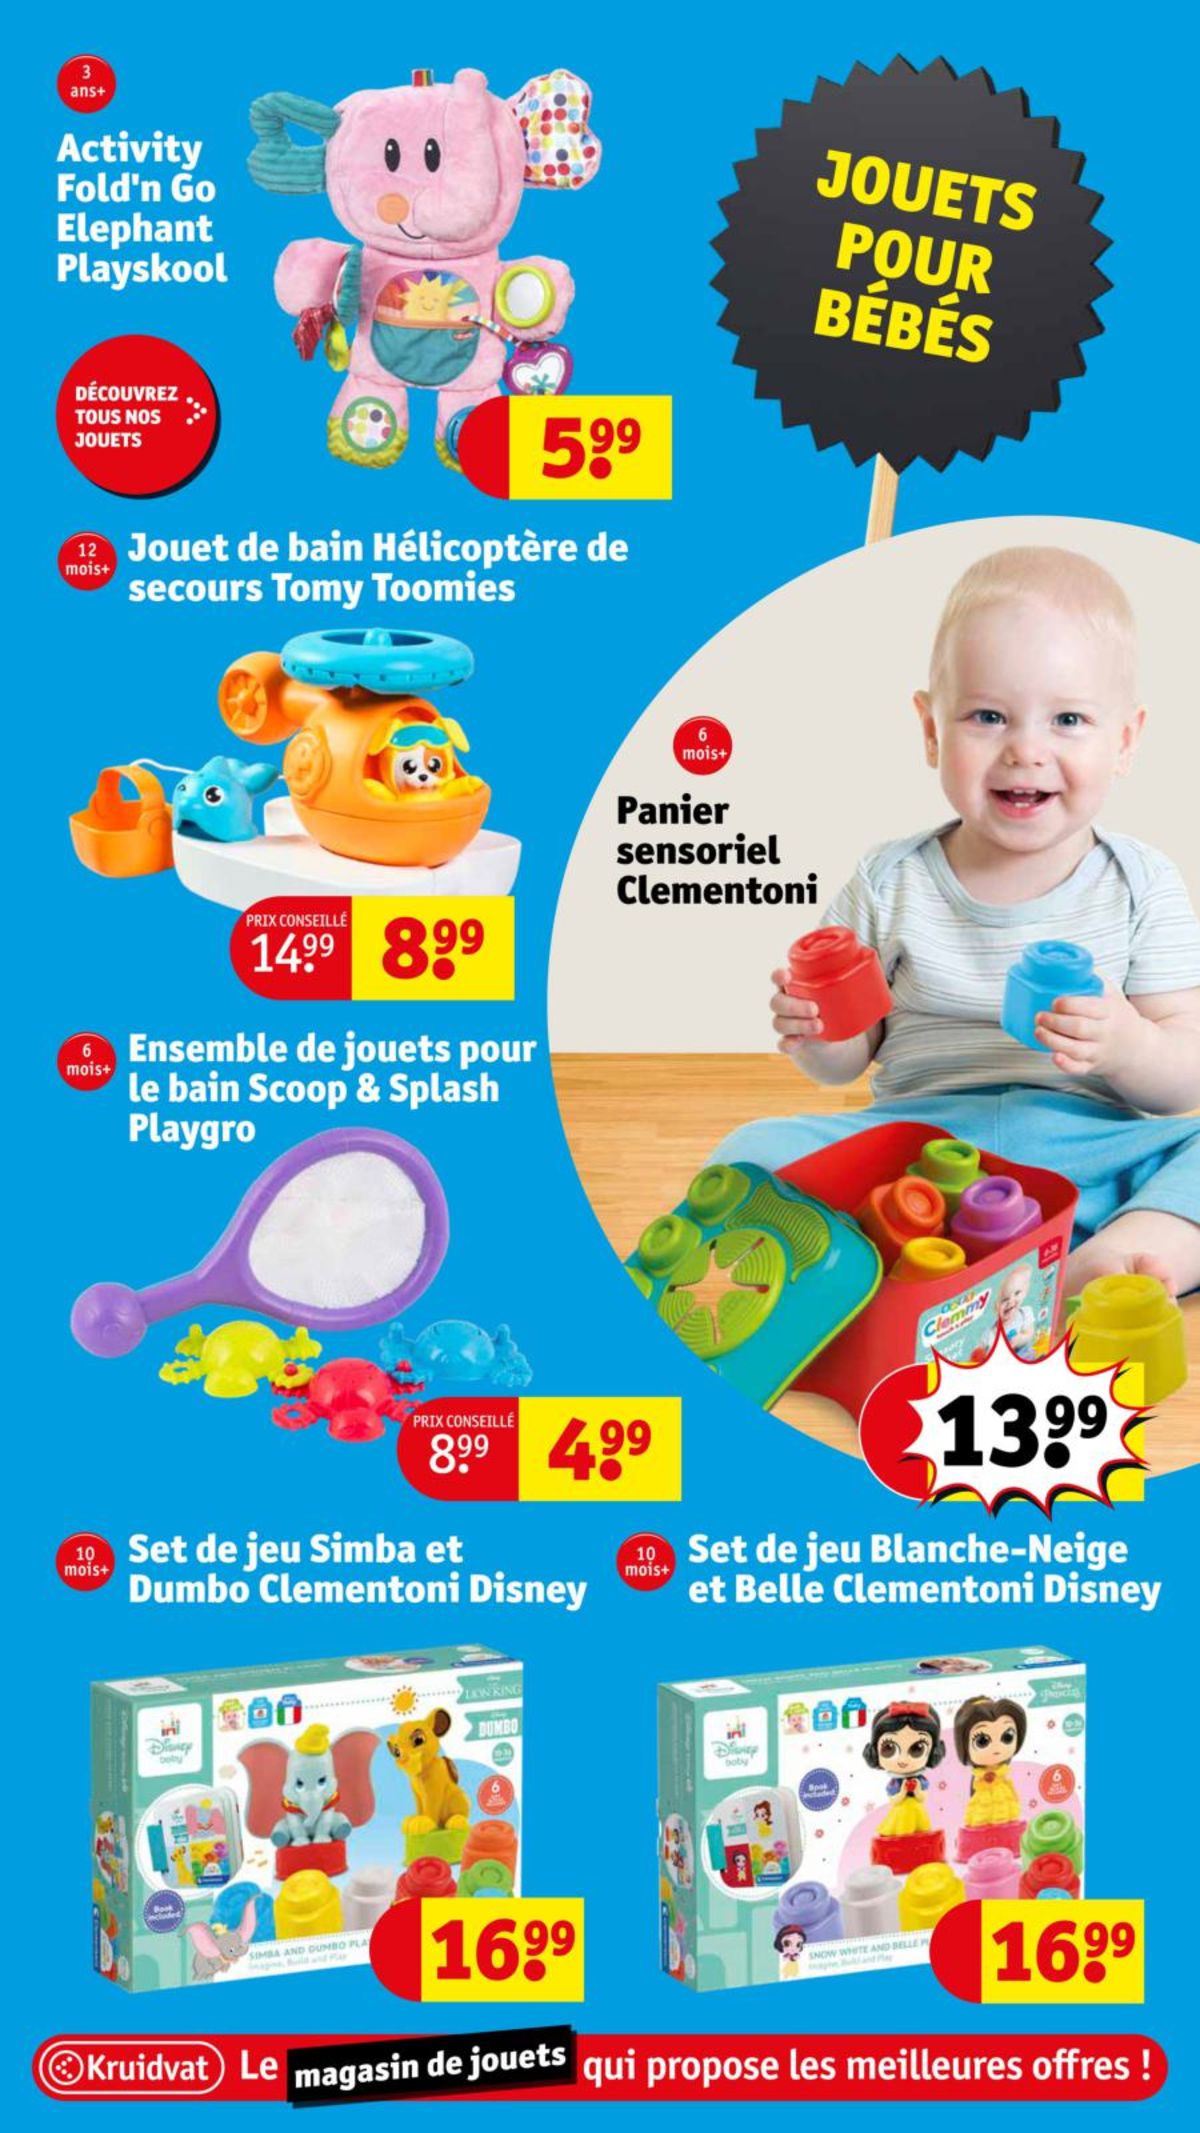 Catalogue Le magasin de jouets aux meilleures offres !, page 00027